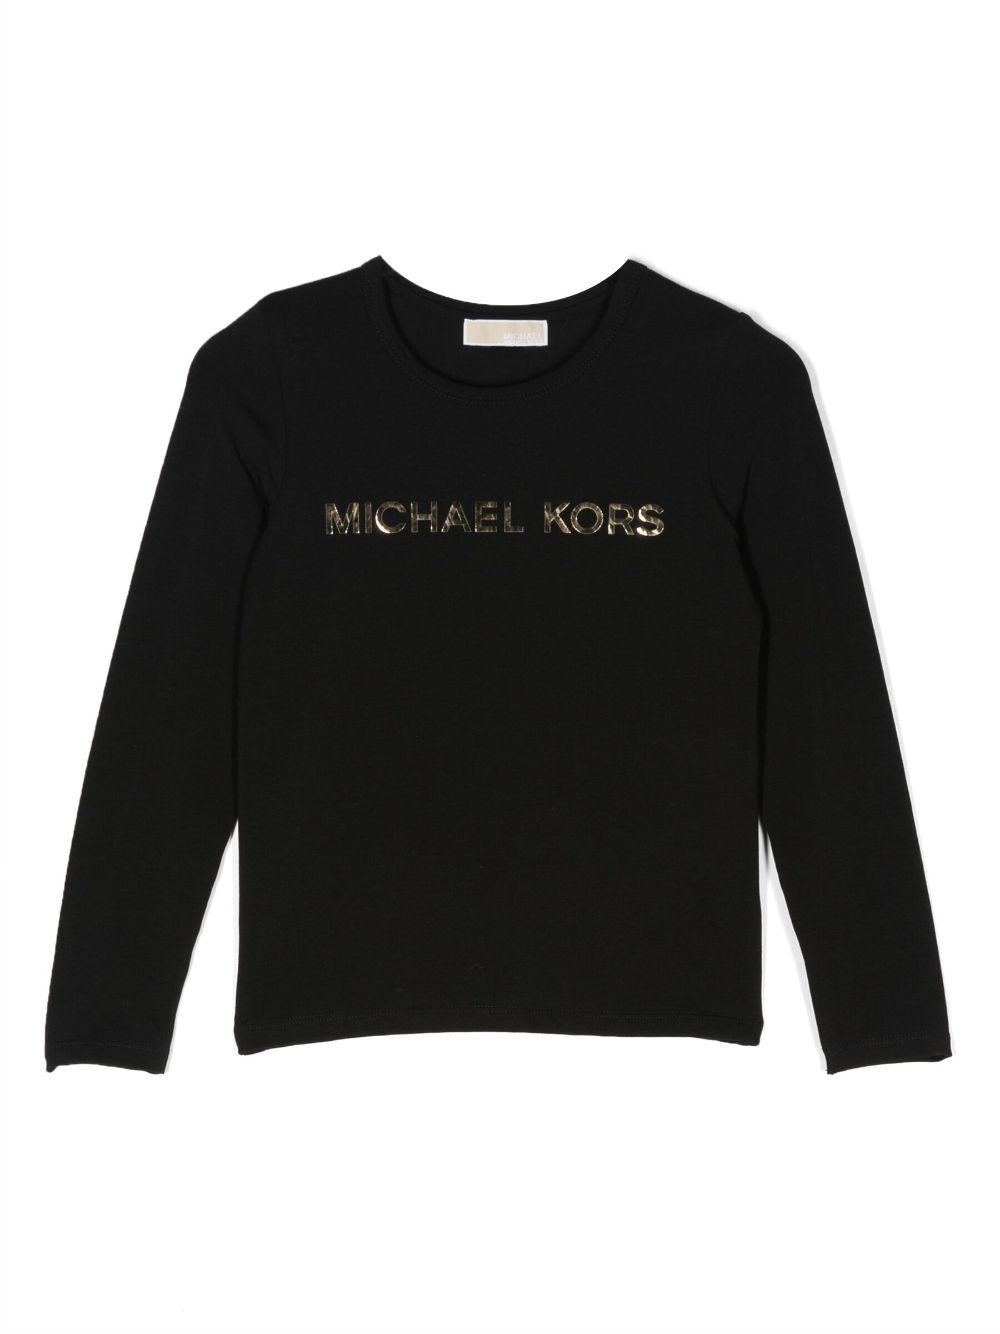 Michael Kors Kids logo-lettering long-sleeved T-shirt - Black